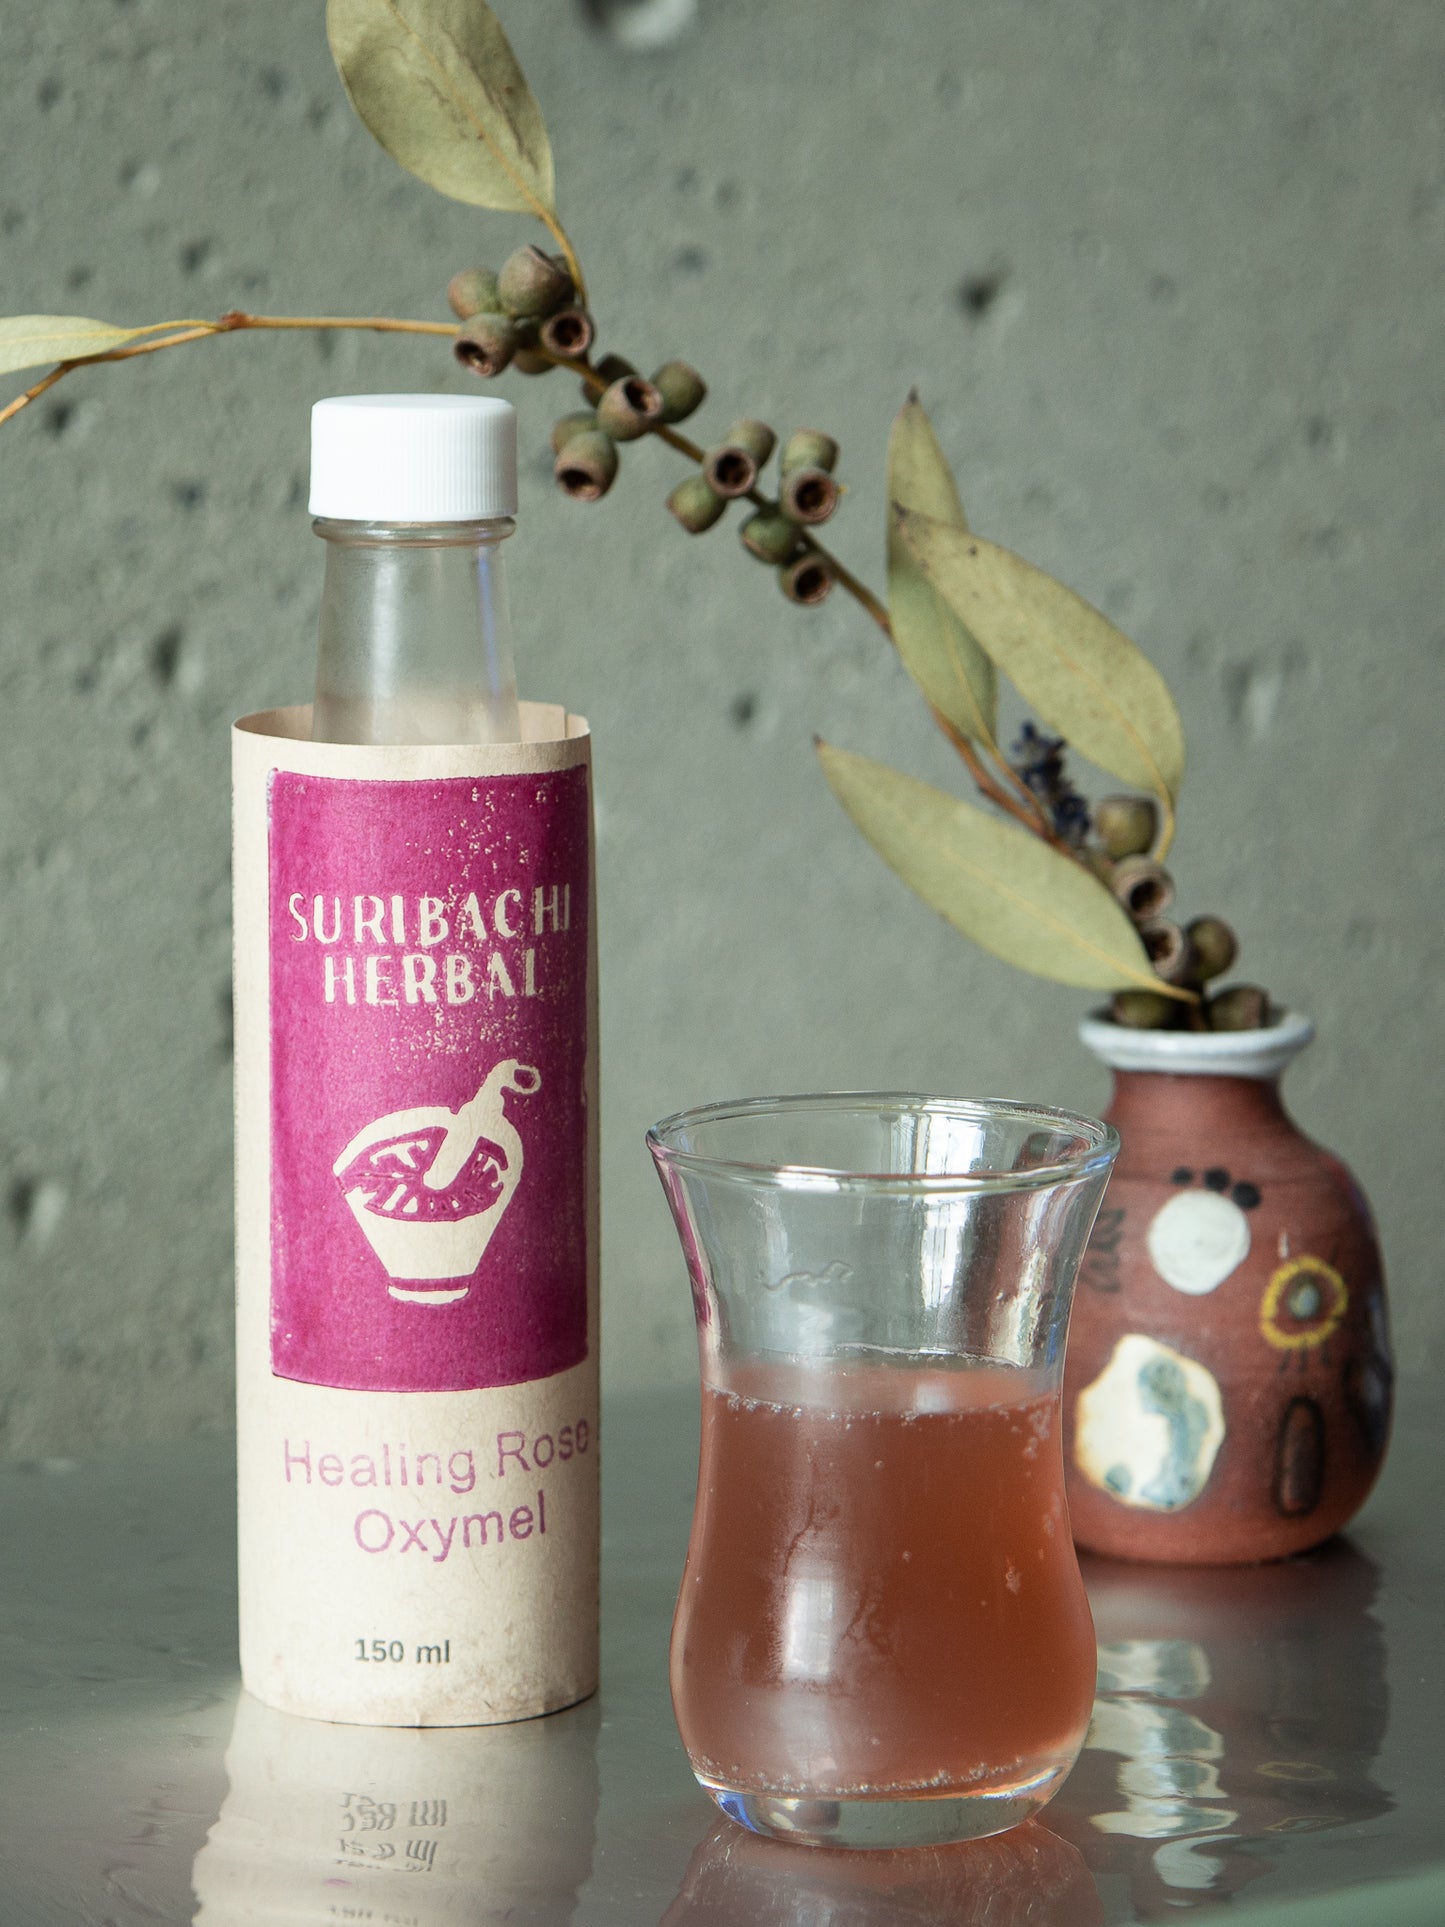 Suribachi Herbal 'Healing Rose' Oxymel